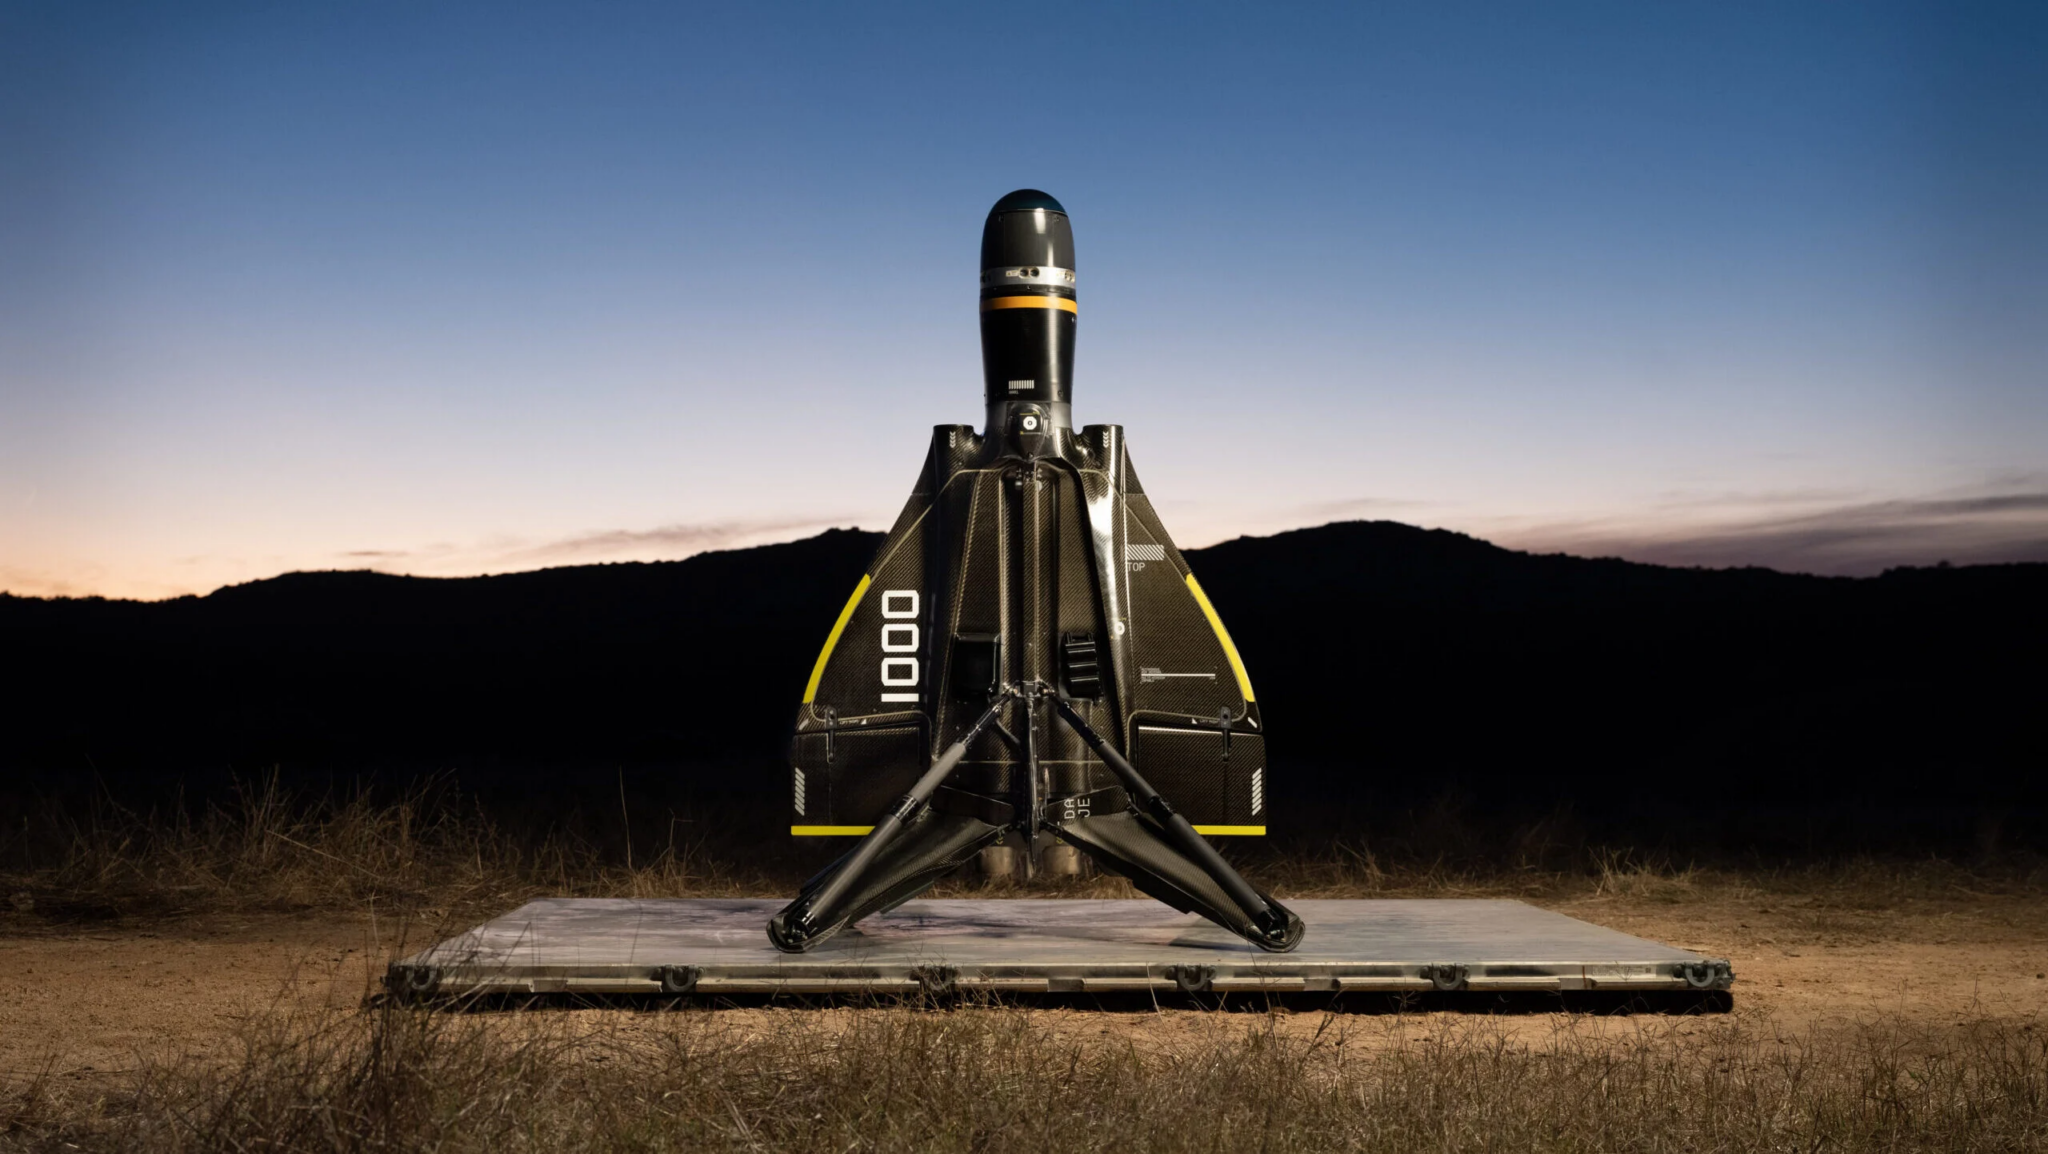 Anduril Roadrunner er verdens første gjenbrukbare ubemannede avskjæringsrakett som kan lande på samme måte som SpaceXs Falcon 9-rakett.